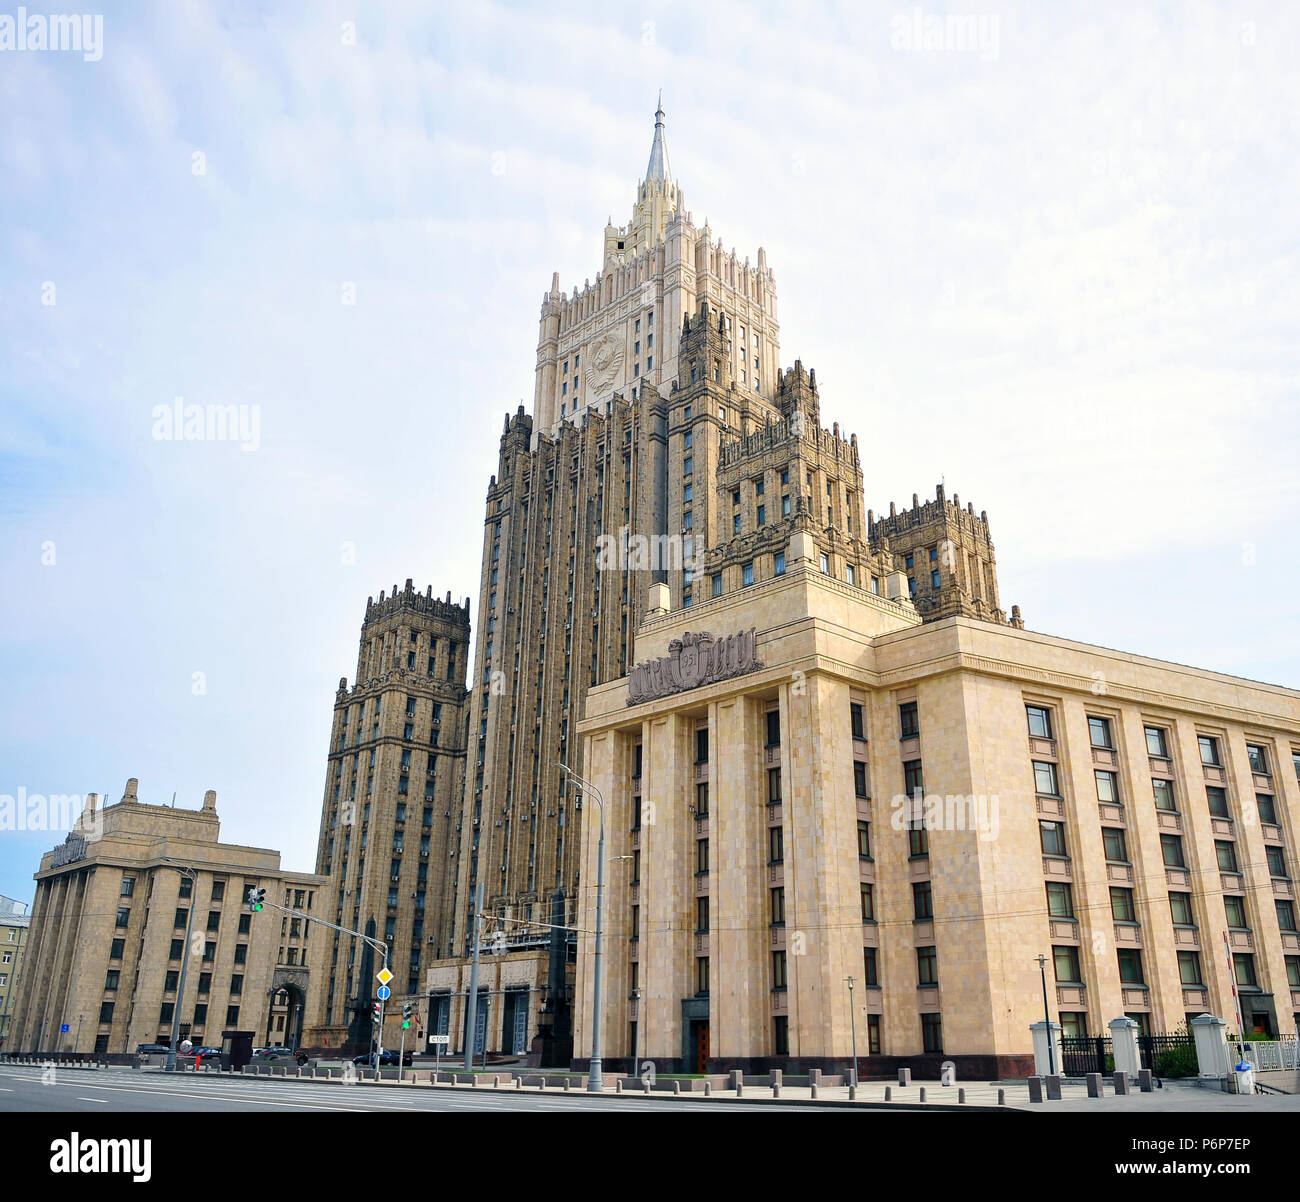 Mosca, Russia - 02 Maggio: facciata di edificio in stalin stile impero, a Mosca il 2 maggio 2018. Foto Stock